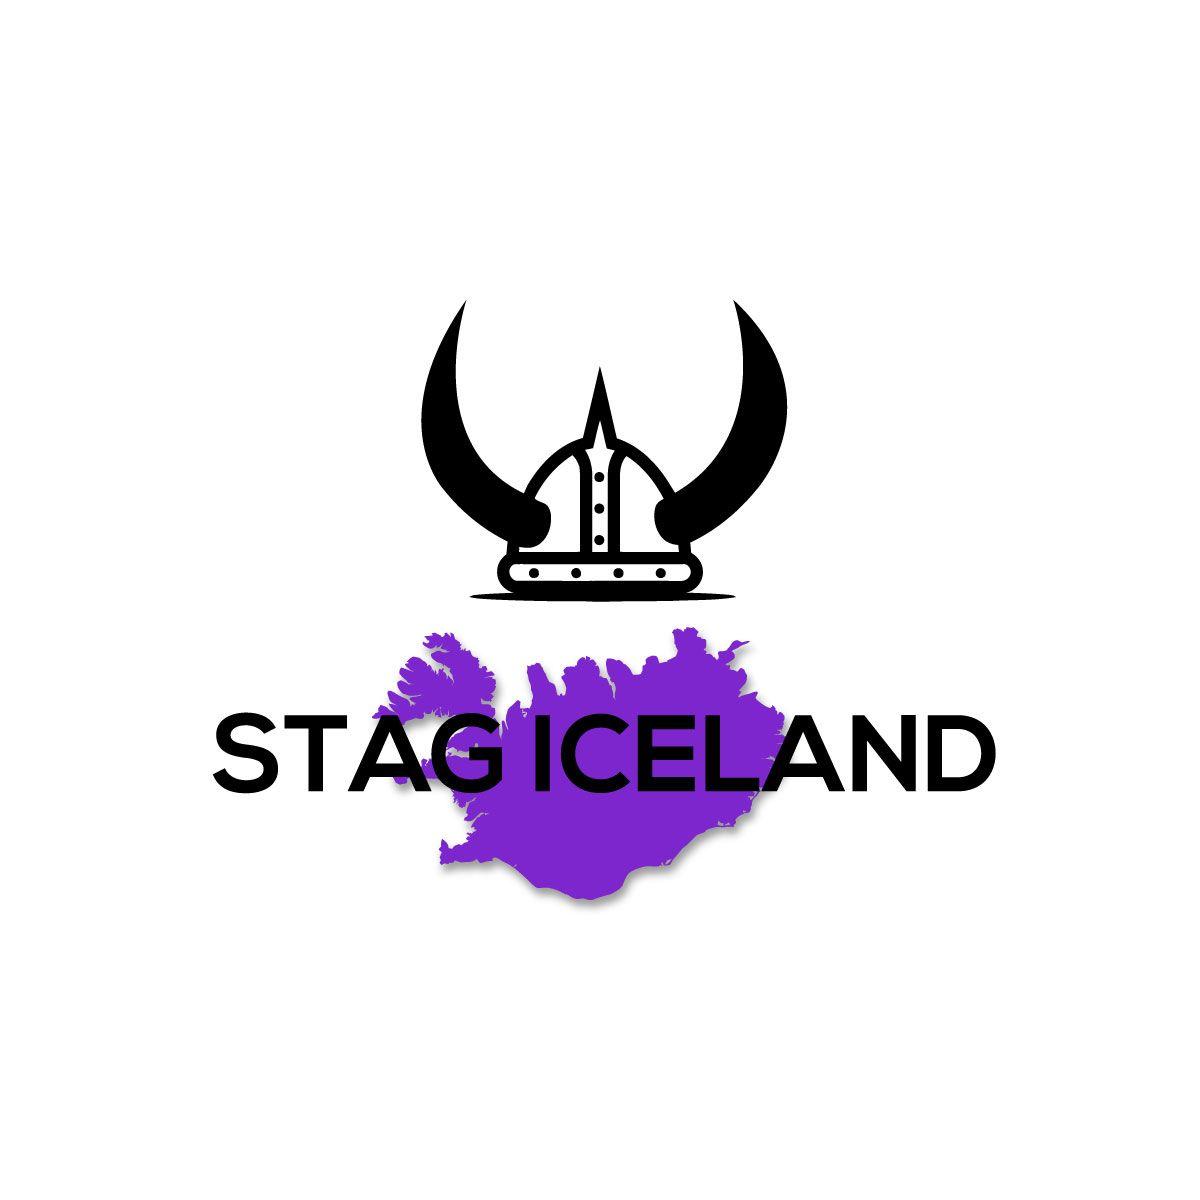 Iceland Logo - Logo Design for Stag Iceland by Logomacker 2 | Design #19629939